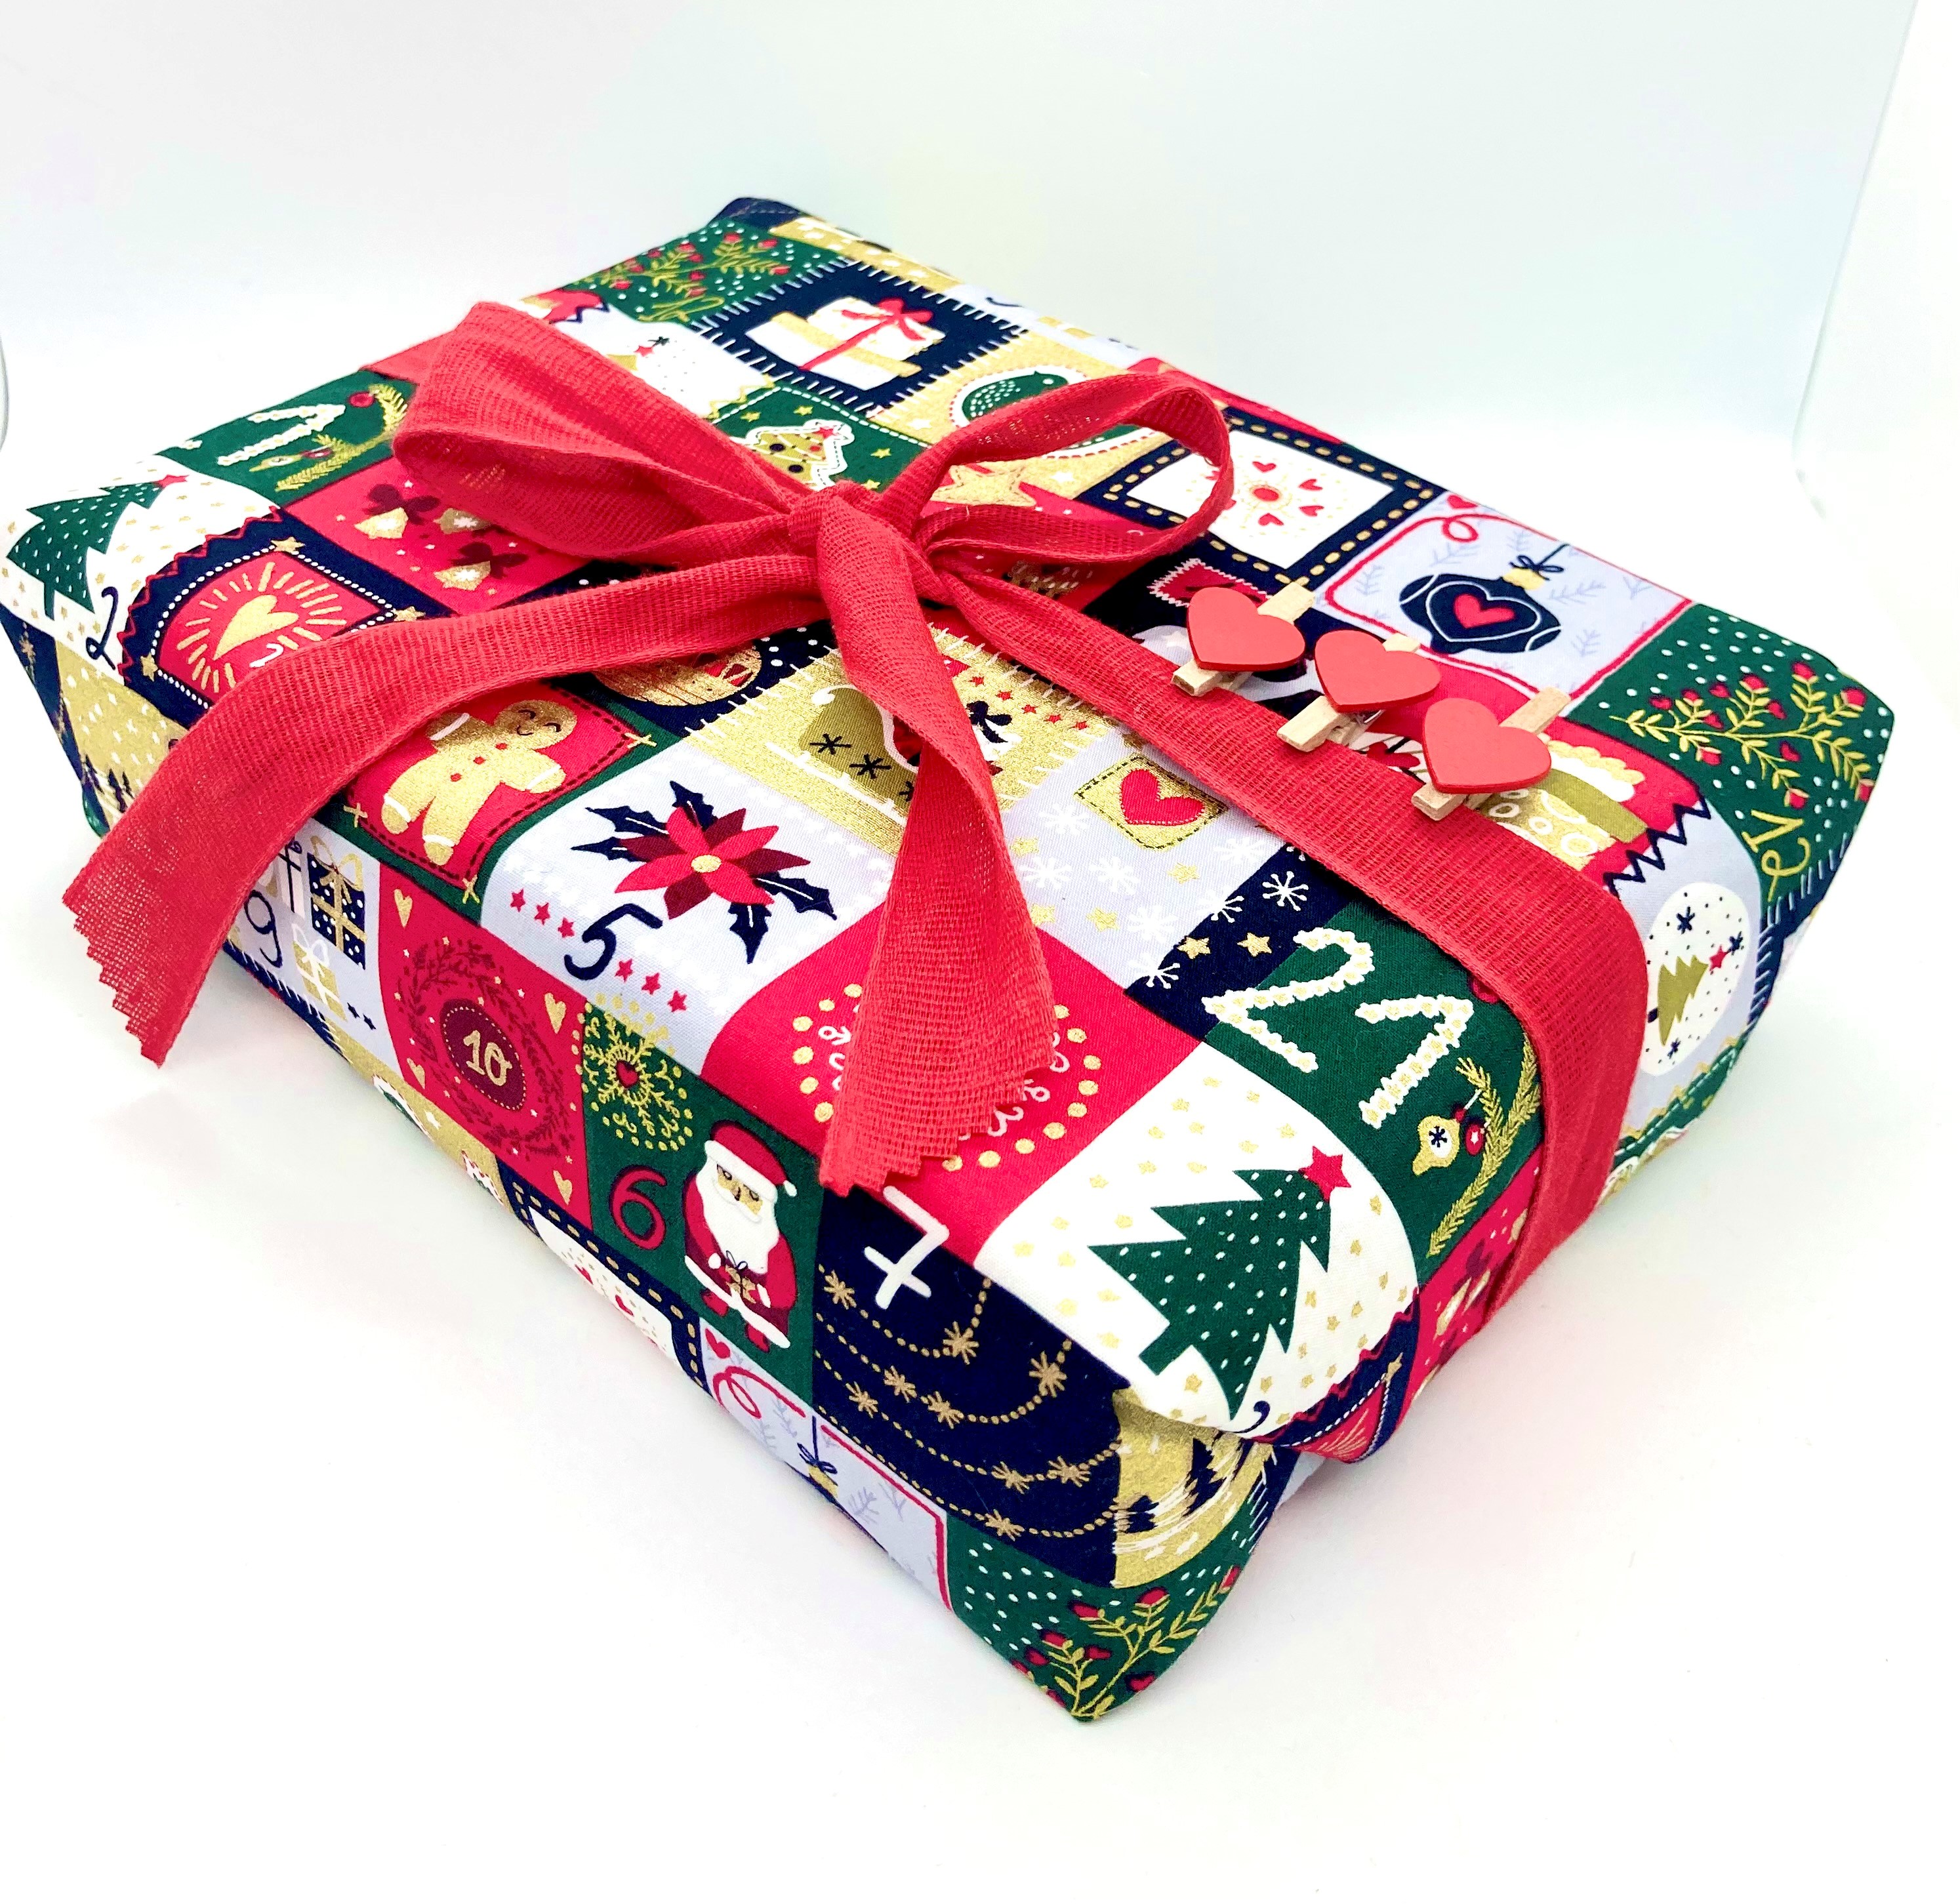 Weihnachten: Adventkalender-Säcke, L & M & S